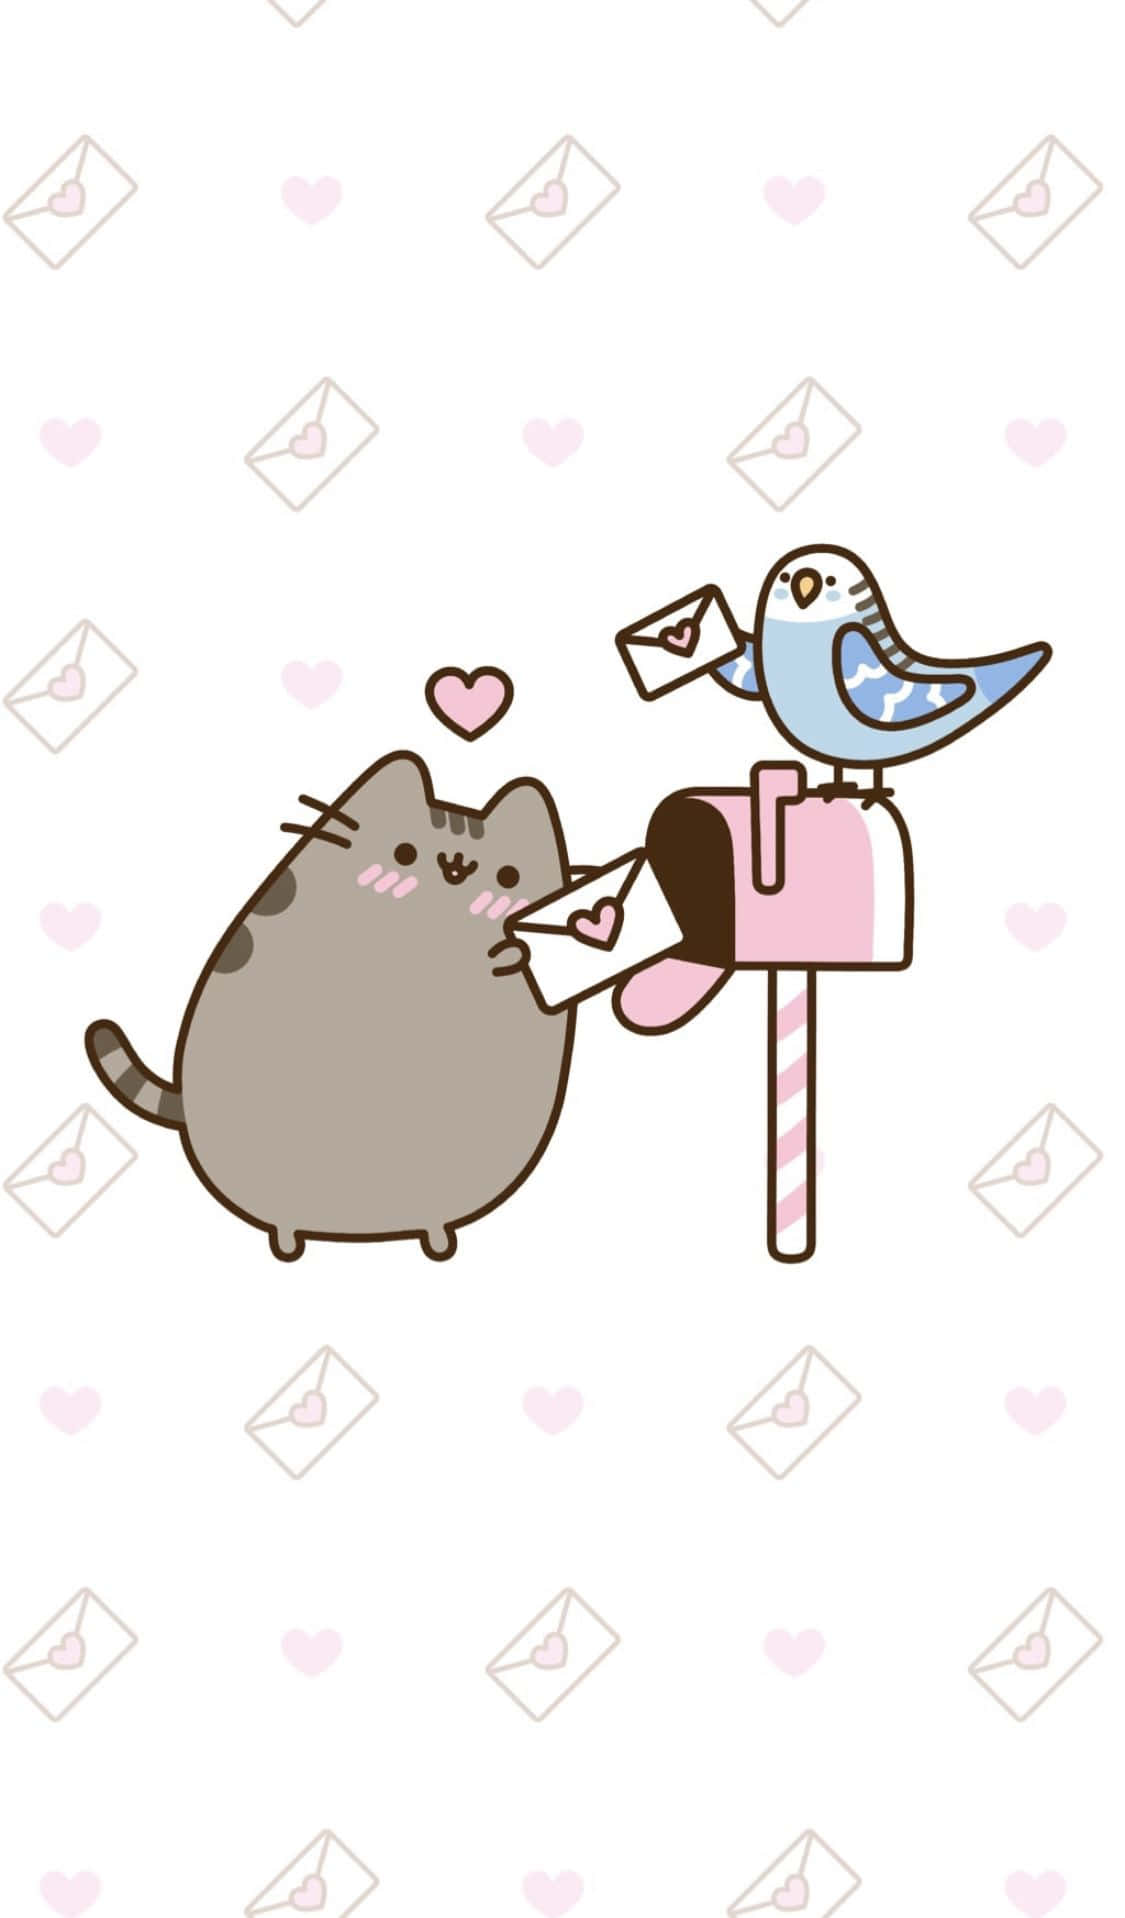 Pusheen Cat And Bird In A Mailbox Wallpaper